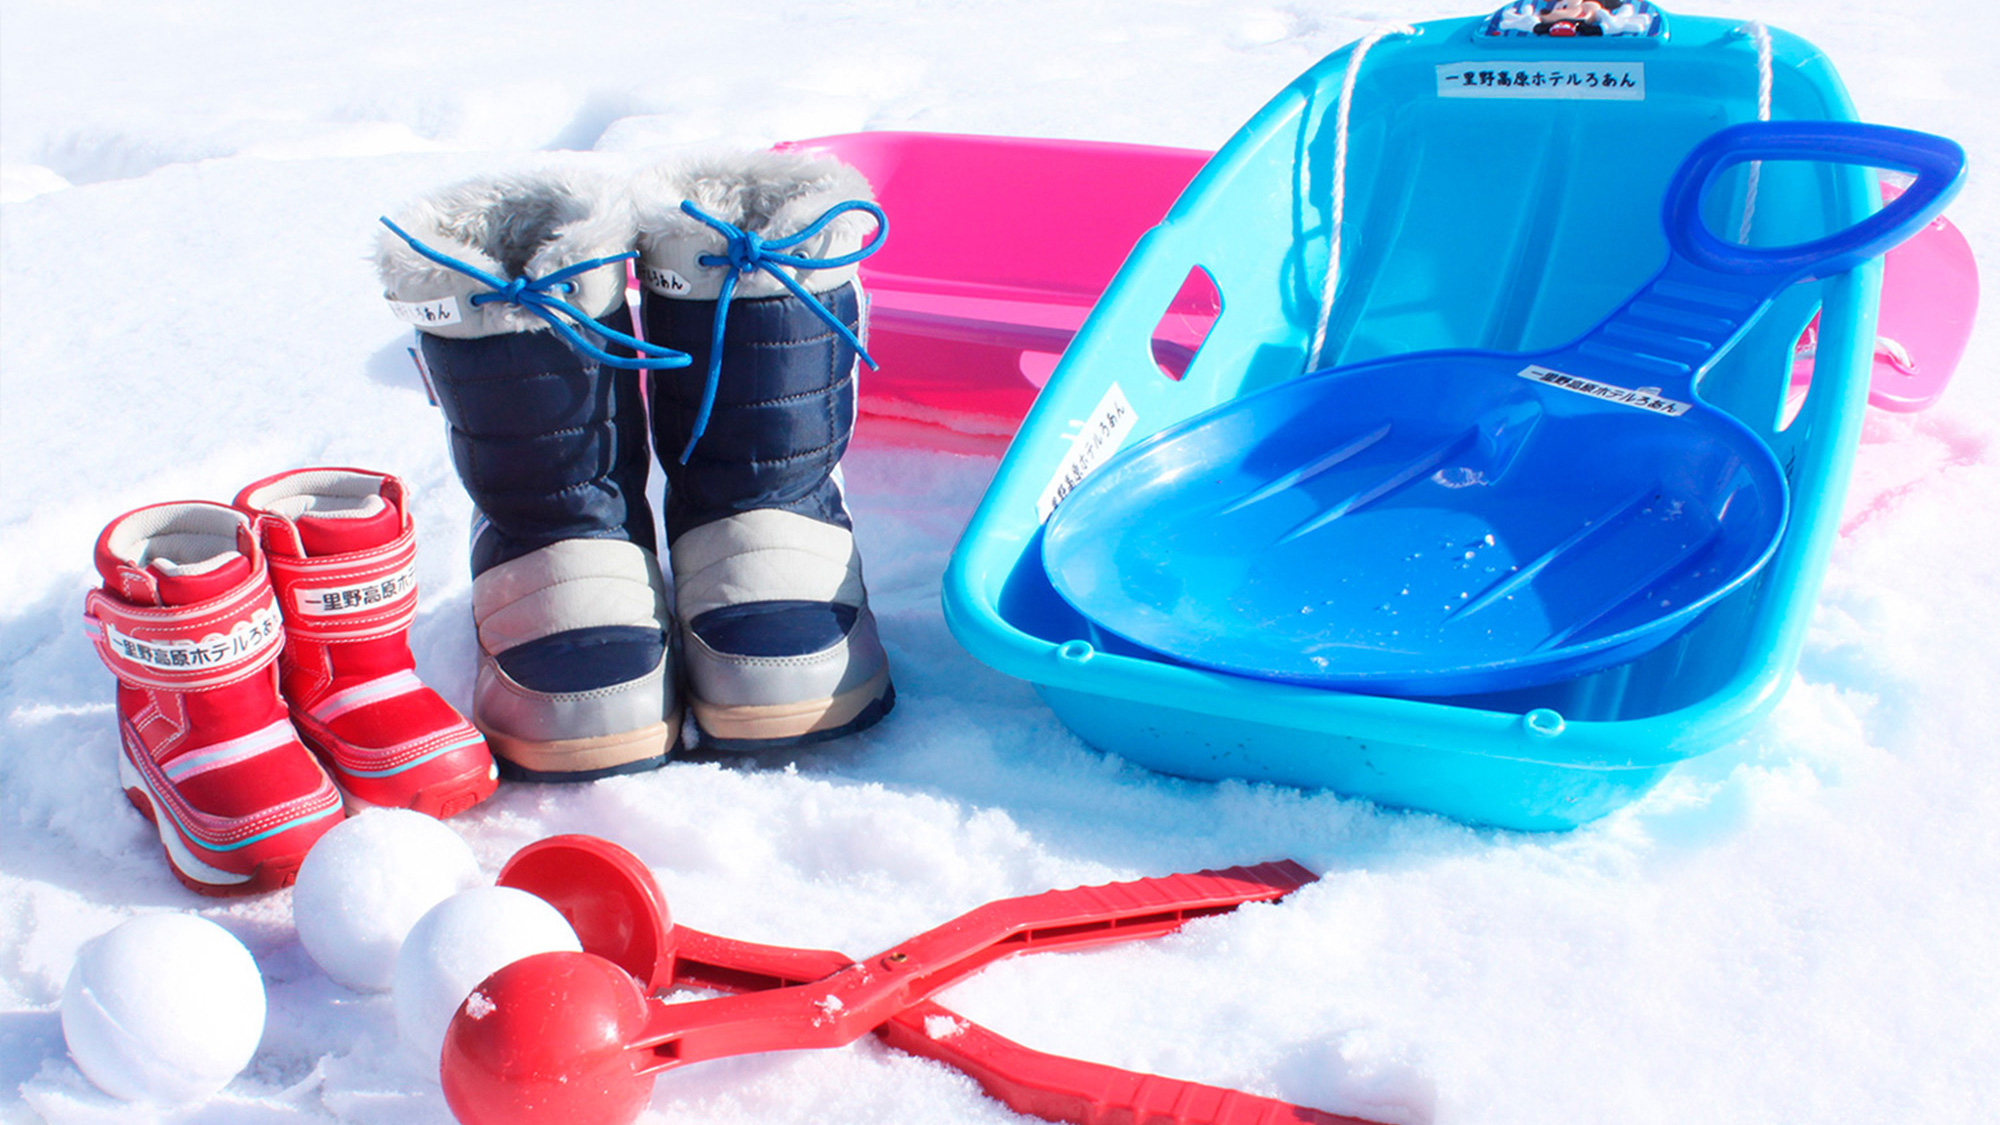 冬季には雪あそび用の「ソリ」「雪玉メーカー」「長靴」などを無料レンタル